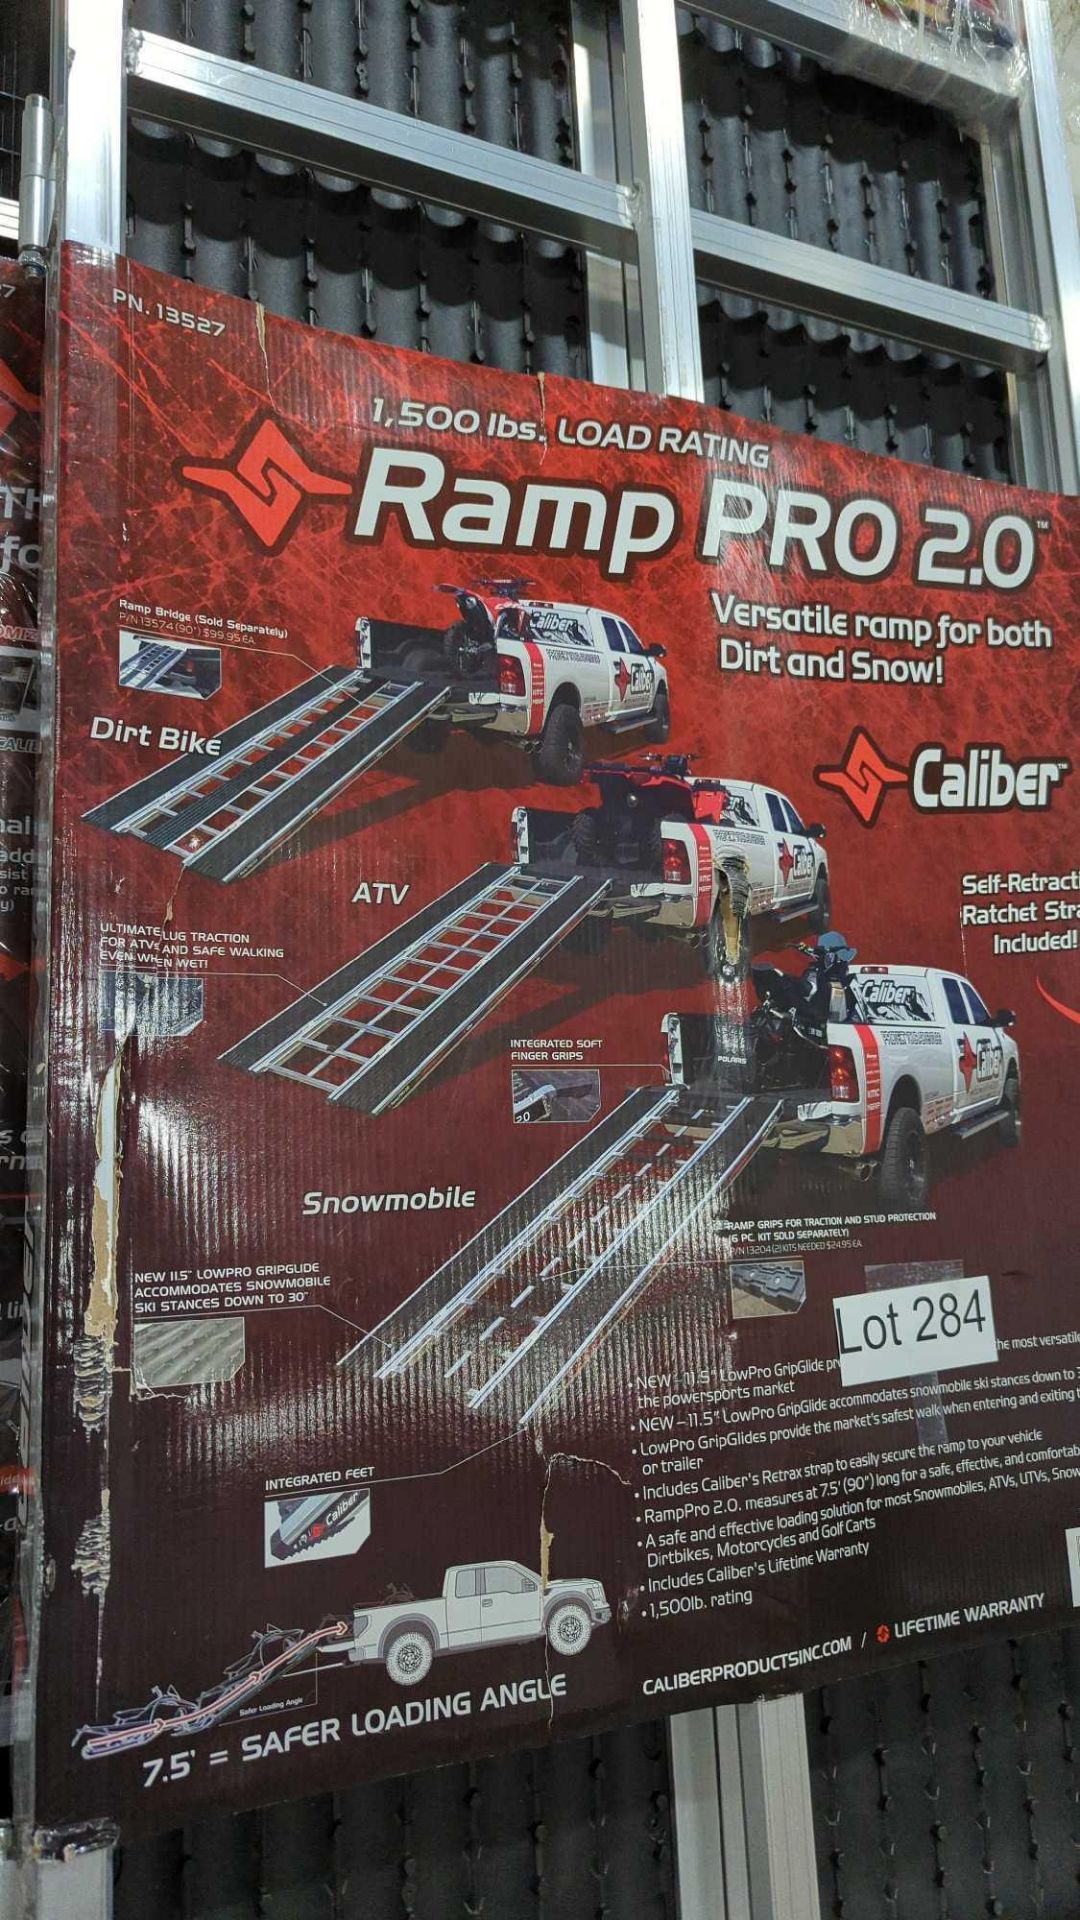 ramp pro 2.0 ramps - Image 3 of 5